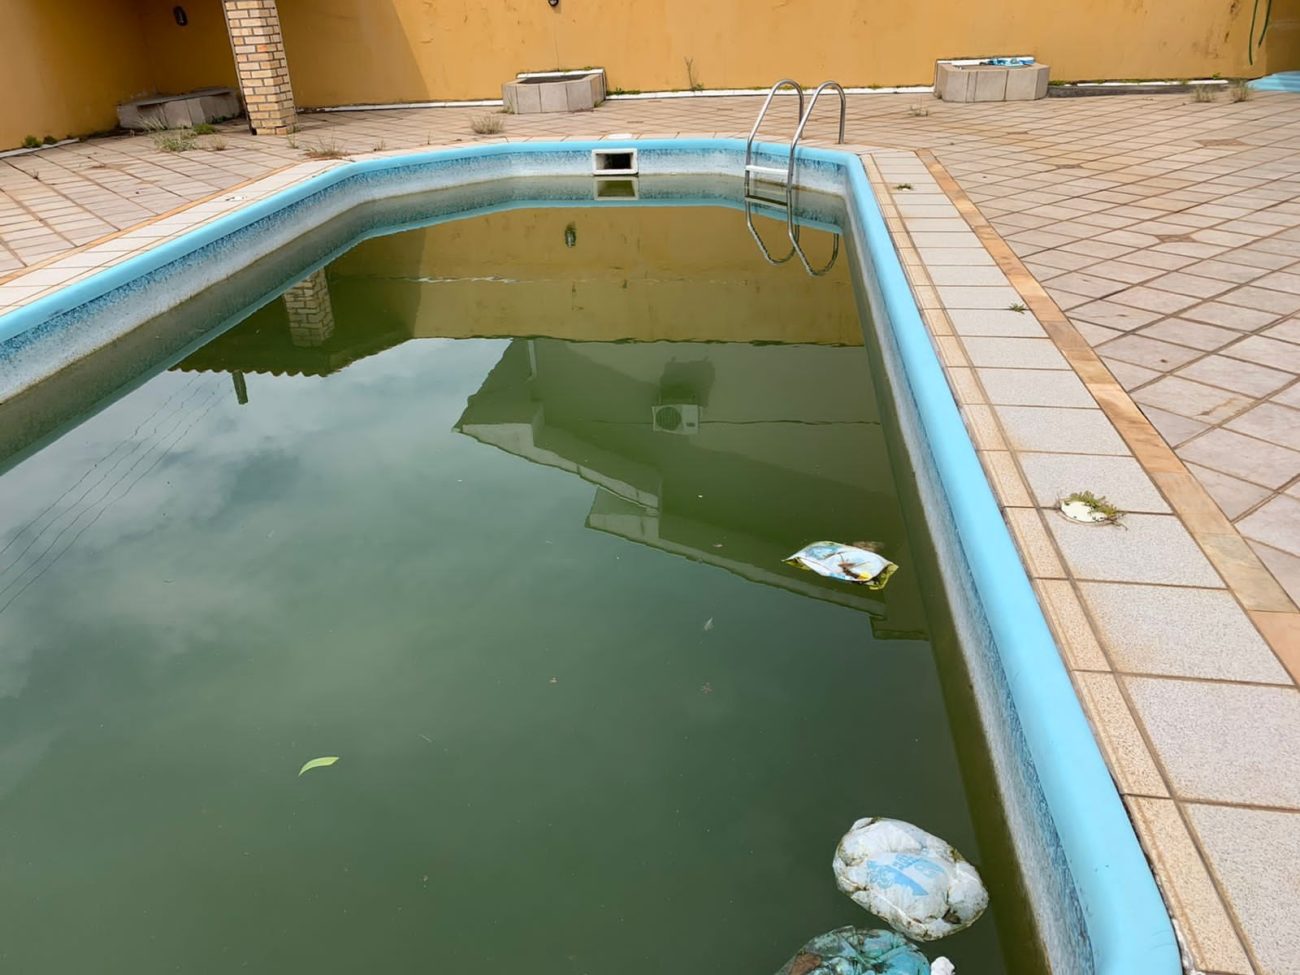 La piscina fue el foco de un mosquito del dengue en una casa desocupada en el barrio de Itakoropi - Foto: Reproducción/Facebook/ND - 277723737_5600107423336681_1475694548413005819_n